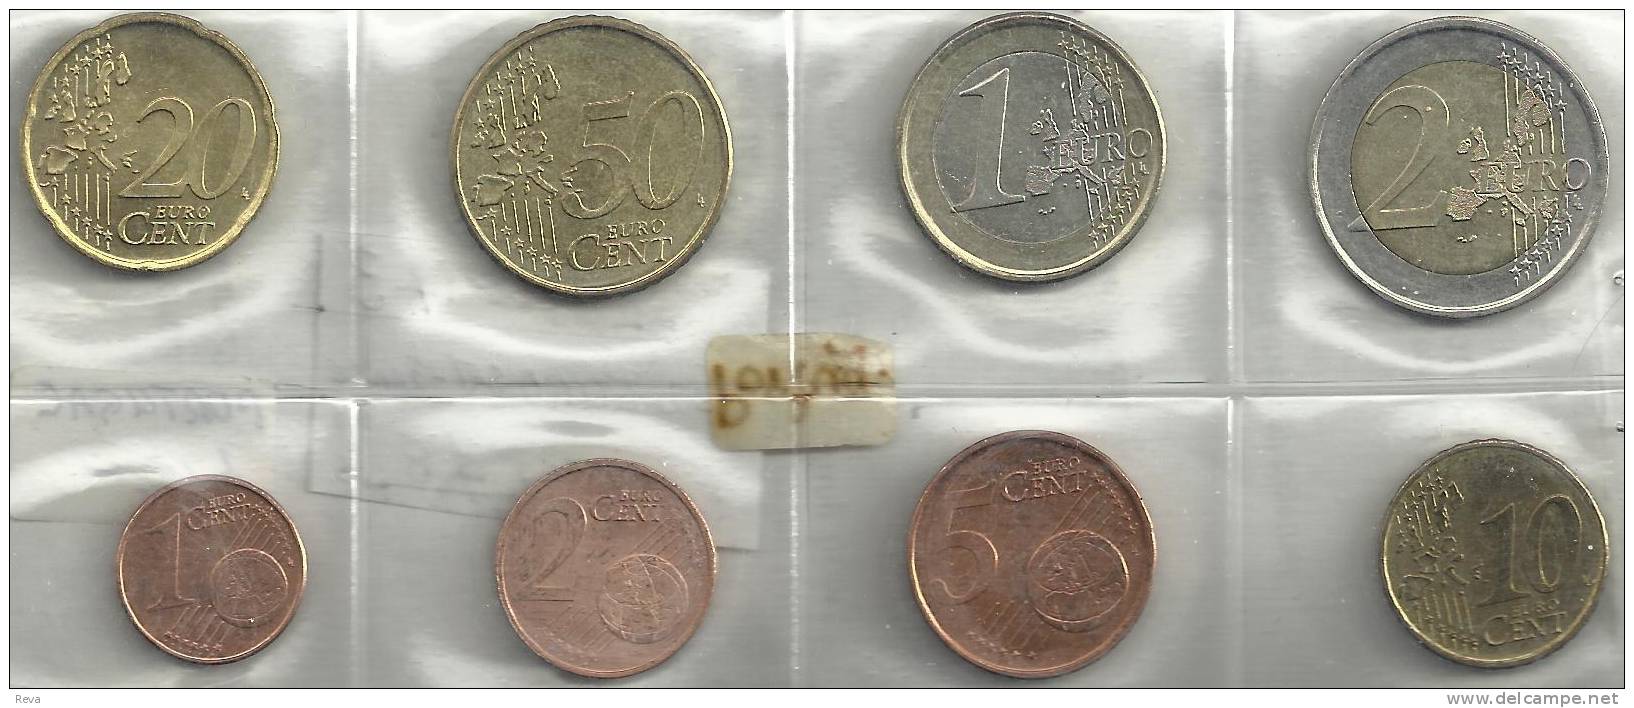 SPAIN SET OF 8 EURO COINS MOTIF FRONT STANDART BACK 1999-2000 UNC READ DESCRIPTION CAREFULLY !!! - Mint Sets & Proof Sets